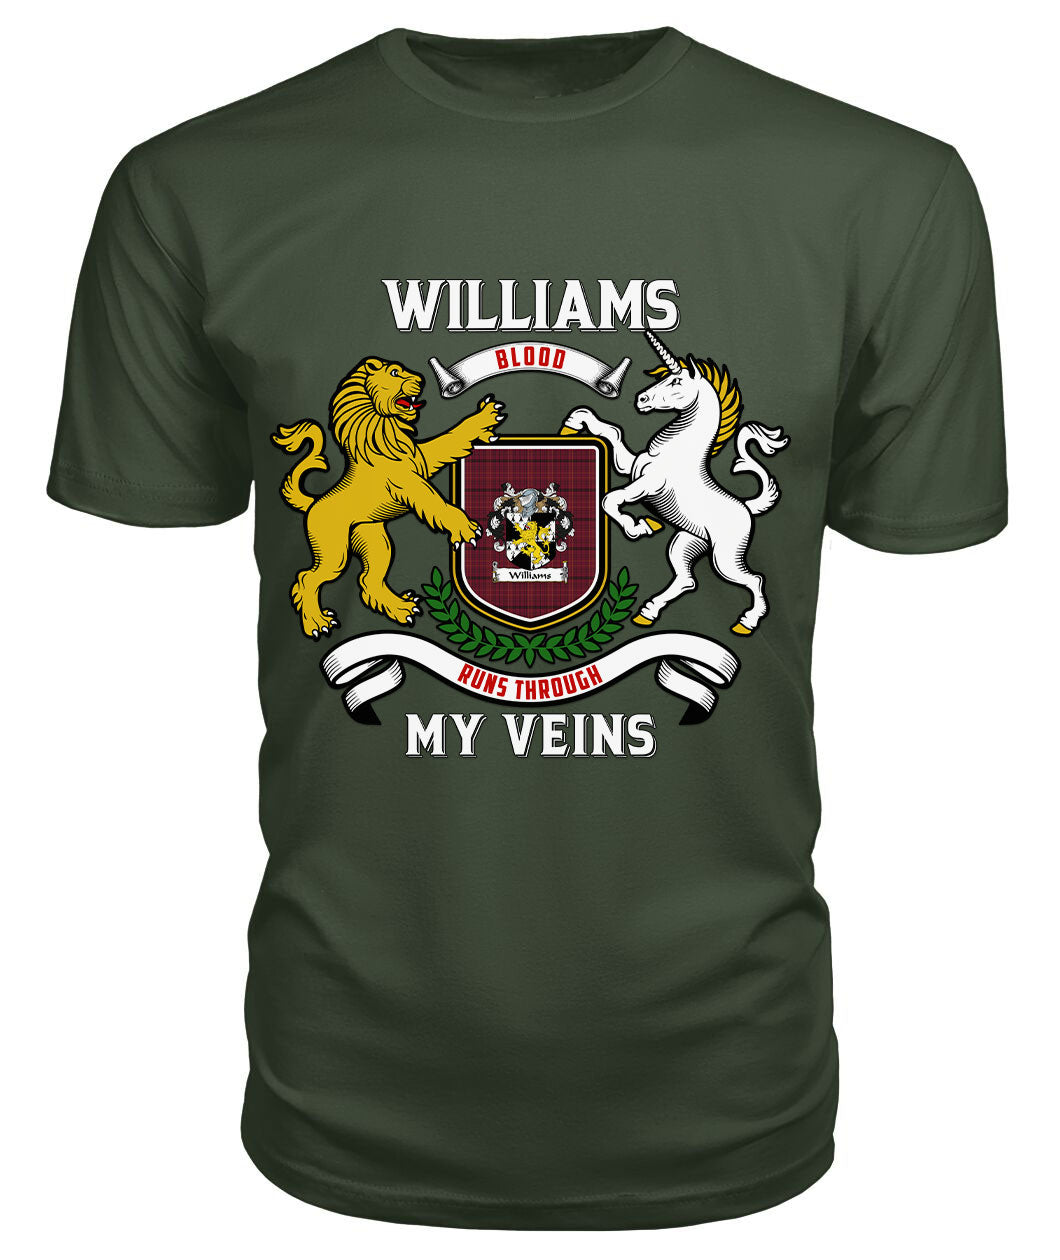 Williams Tartan Crest 2D T-shirt - Blood Runs Through My Veins Style